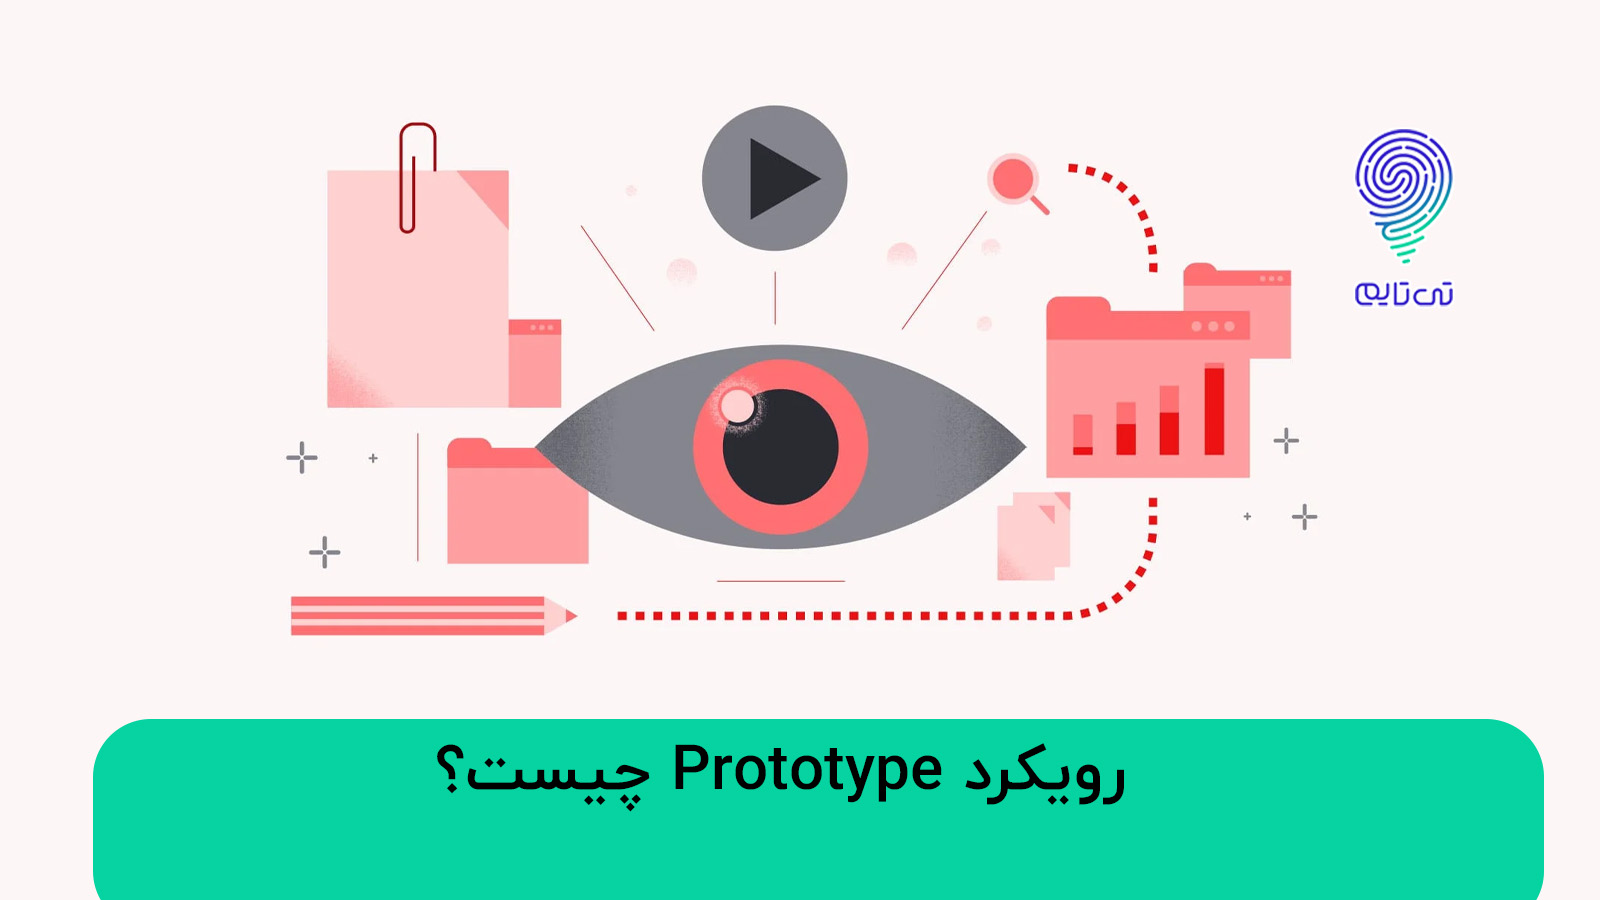 رویکرد Prototype چیست؟ | 6 مرحله اصلی پروتوتایپ